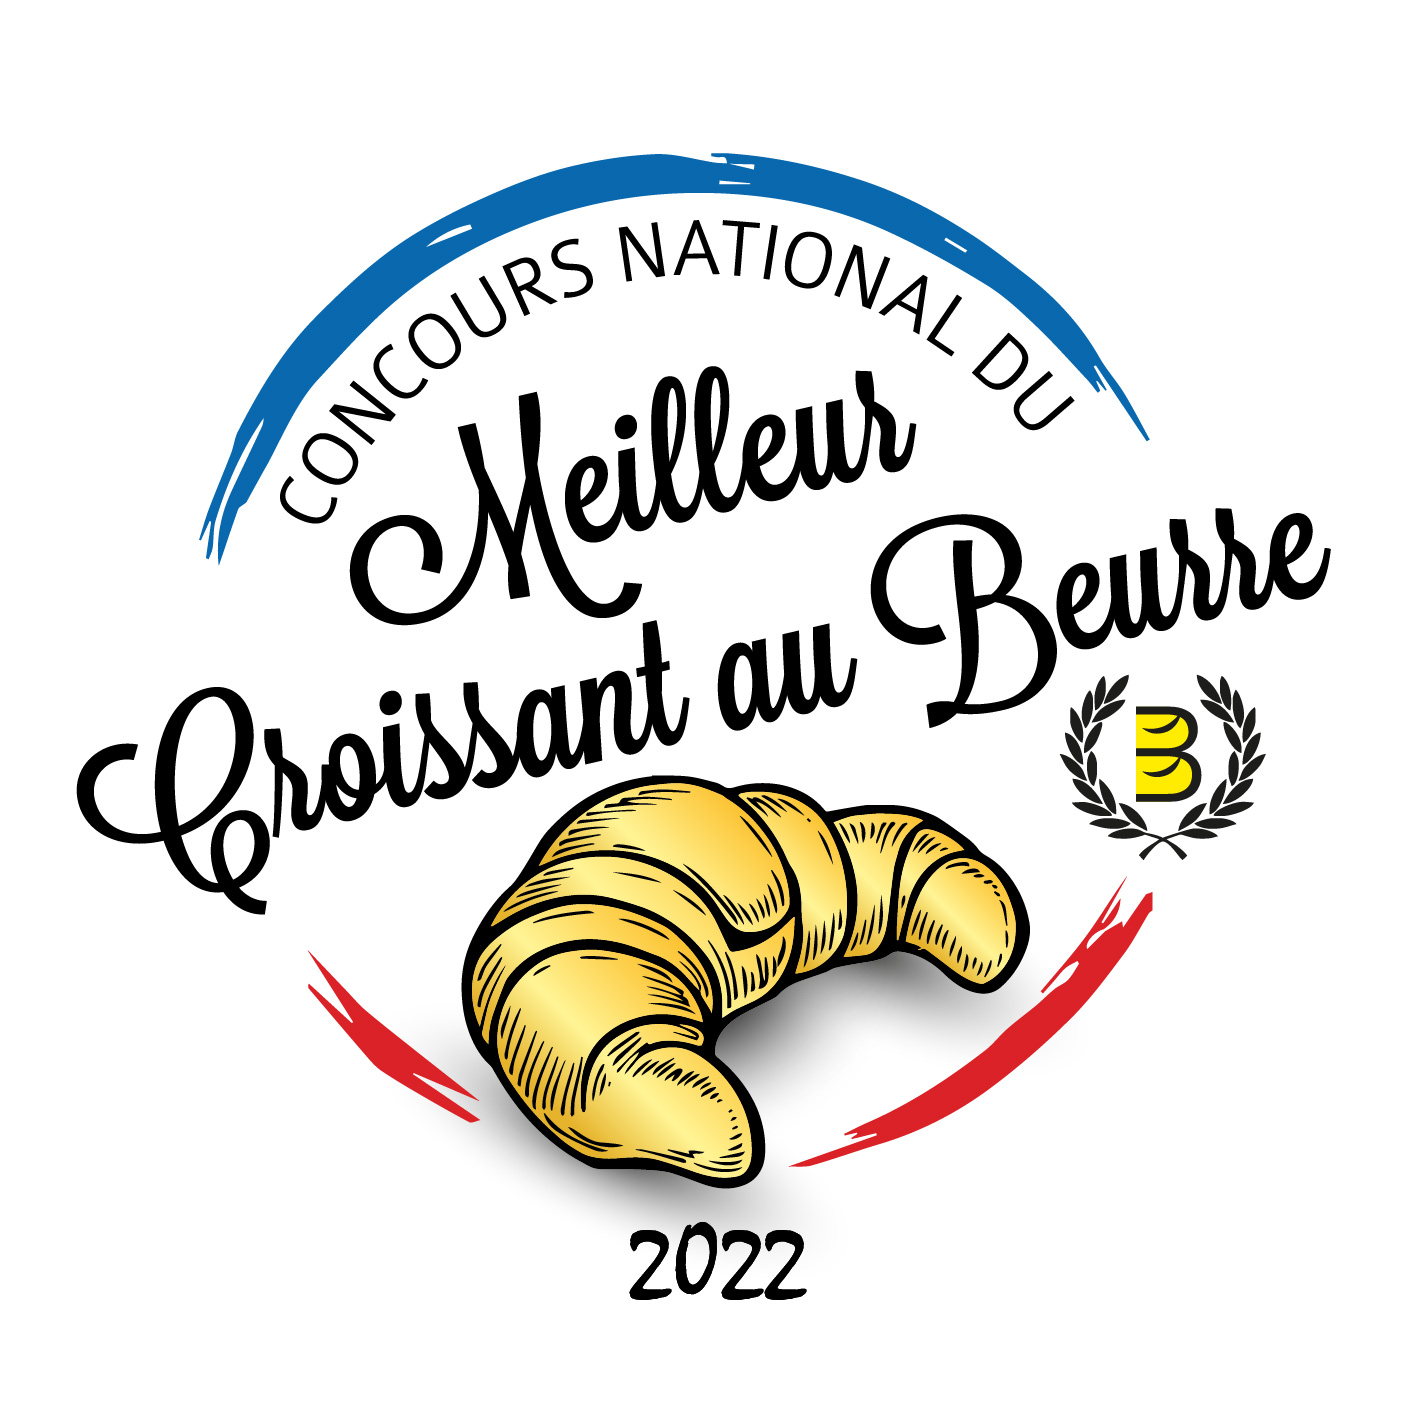 Résultats – Finale de la 3ème édition du concours national du Meilleur Croissant au Beurre